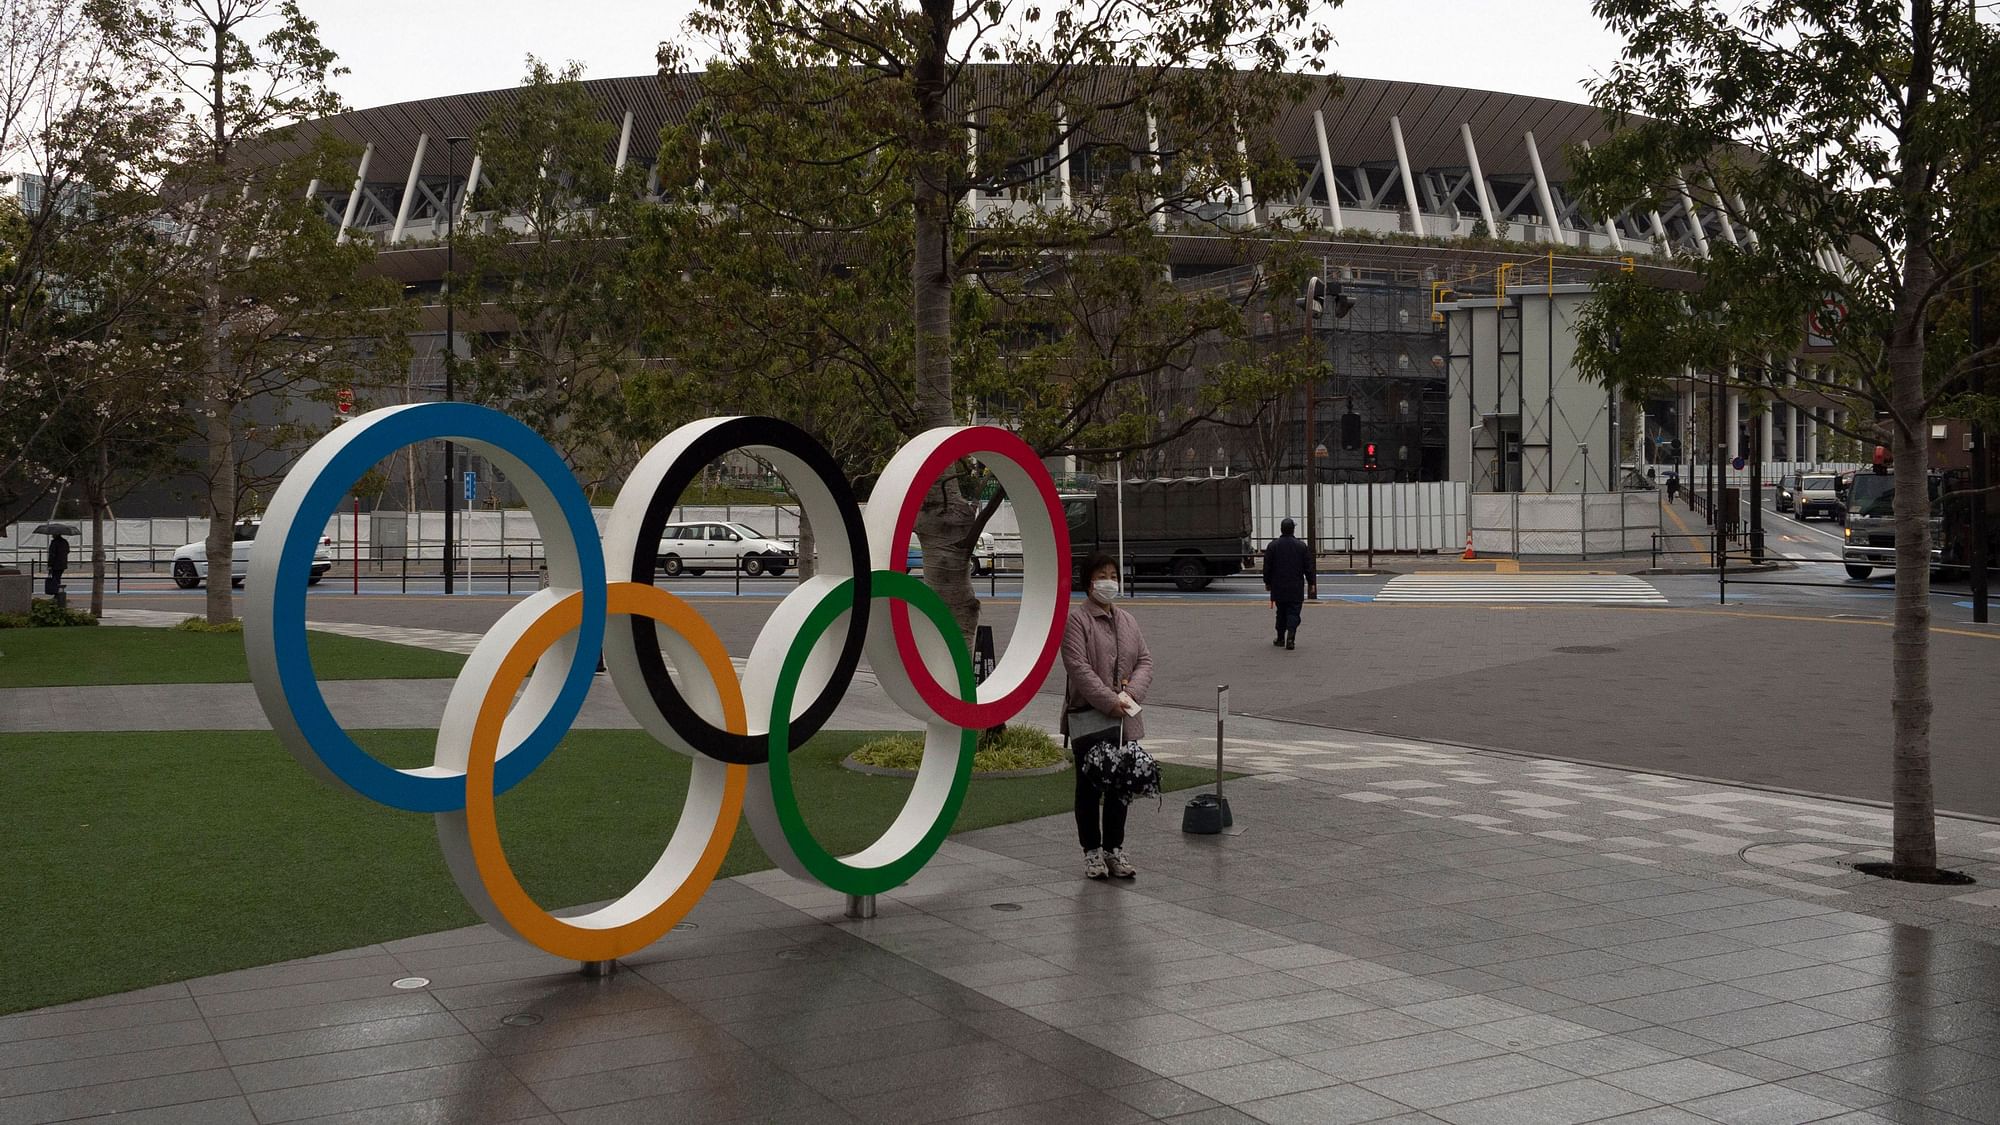 टोक्यो में 24 जुलाई से ओलंपिक खेलों का आयोजन होना है